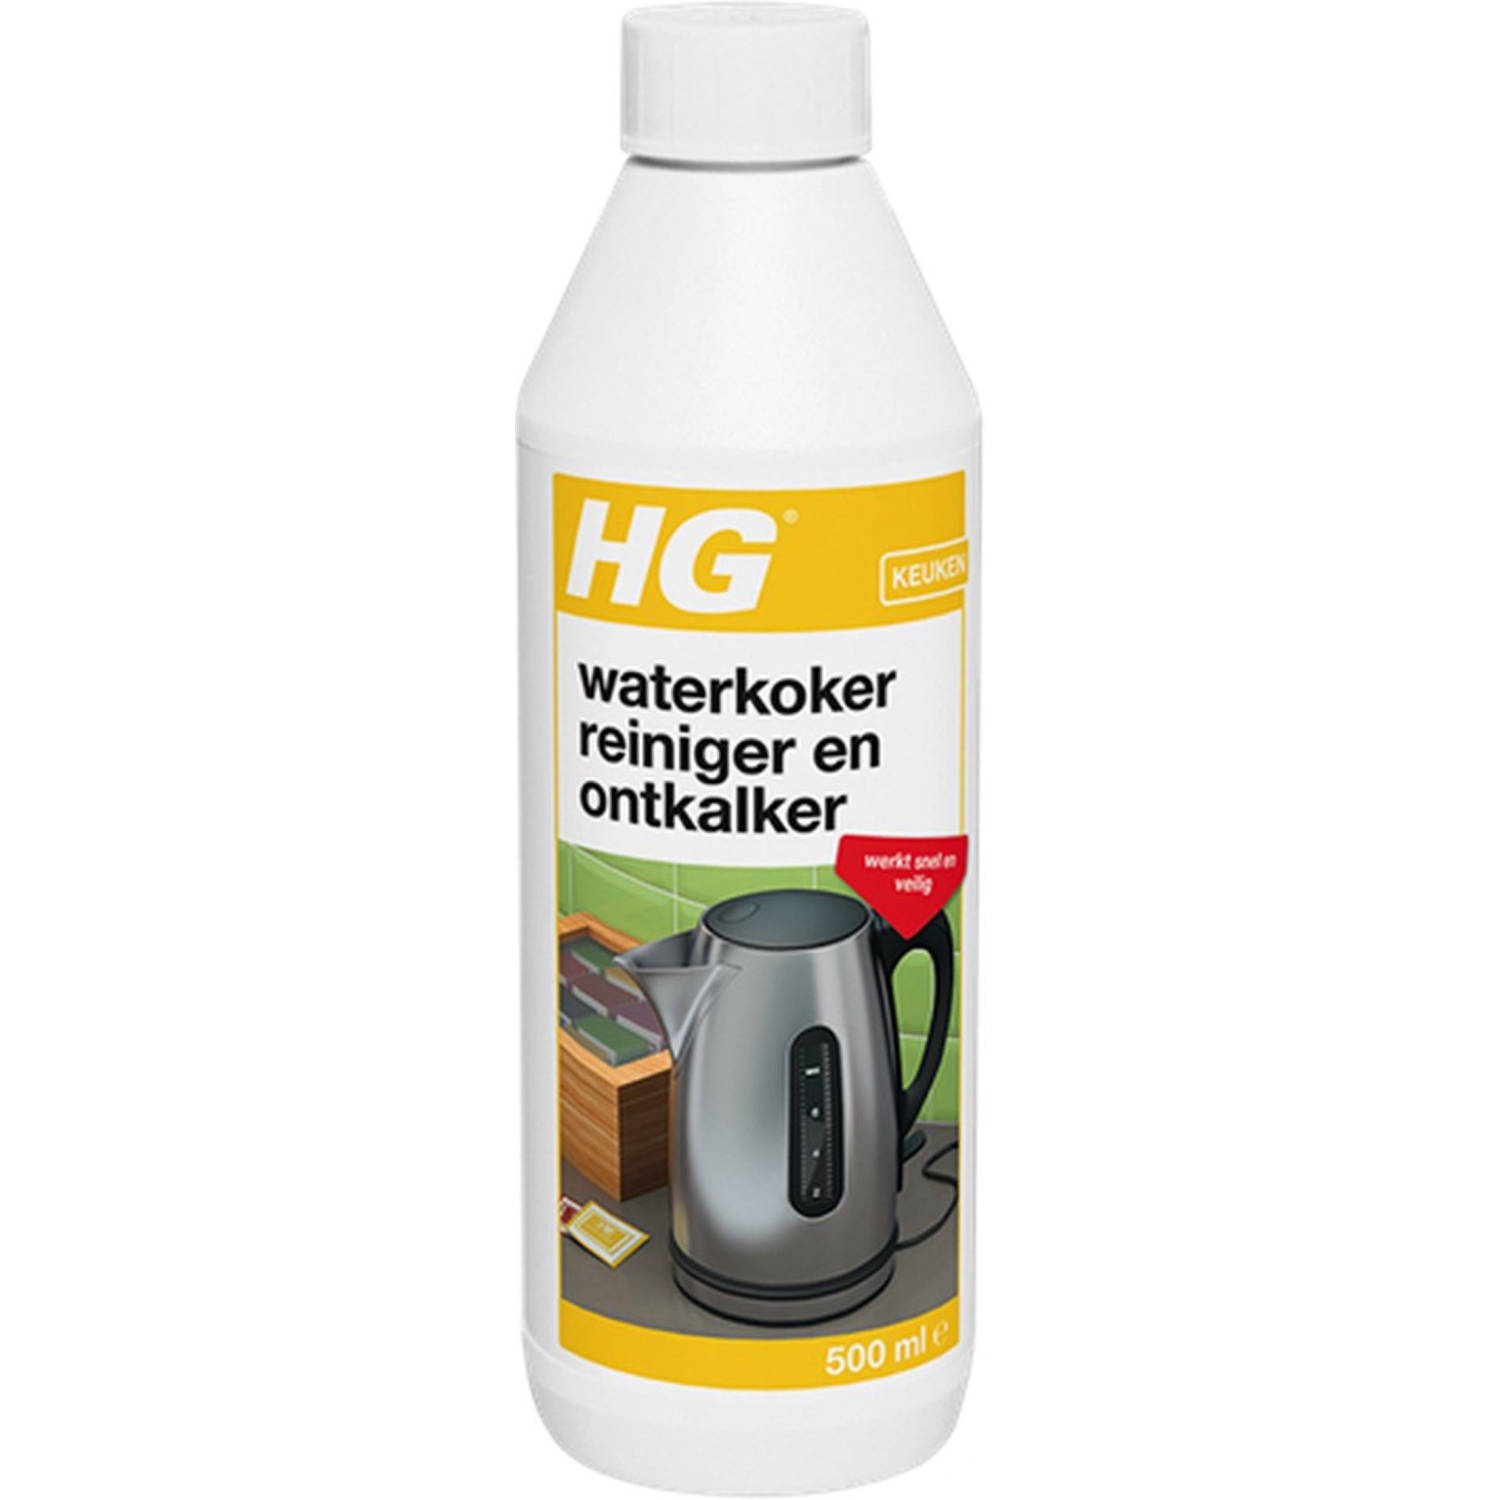 HG reiniger & ontkalker voor waterkokers duoverpakking 500 ml